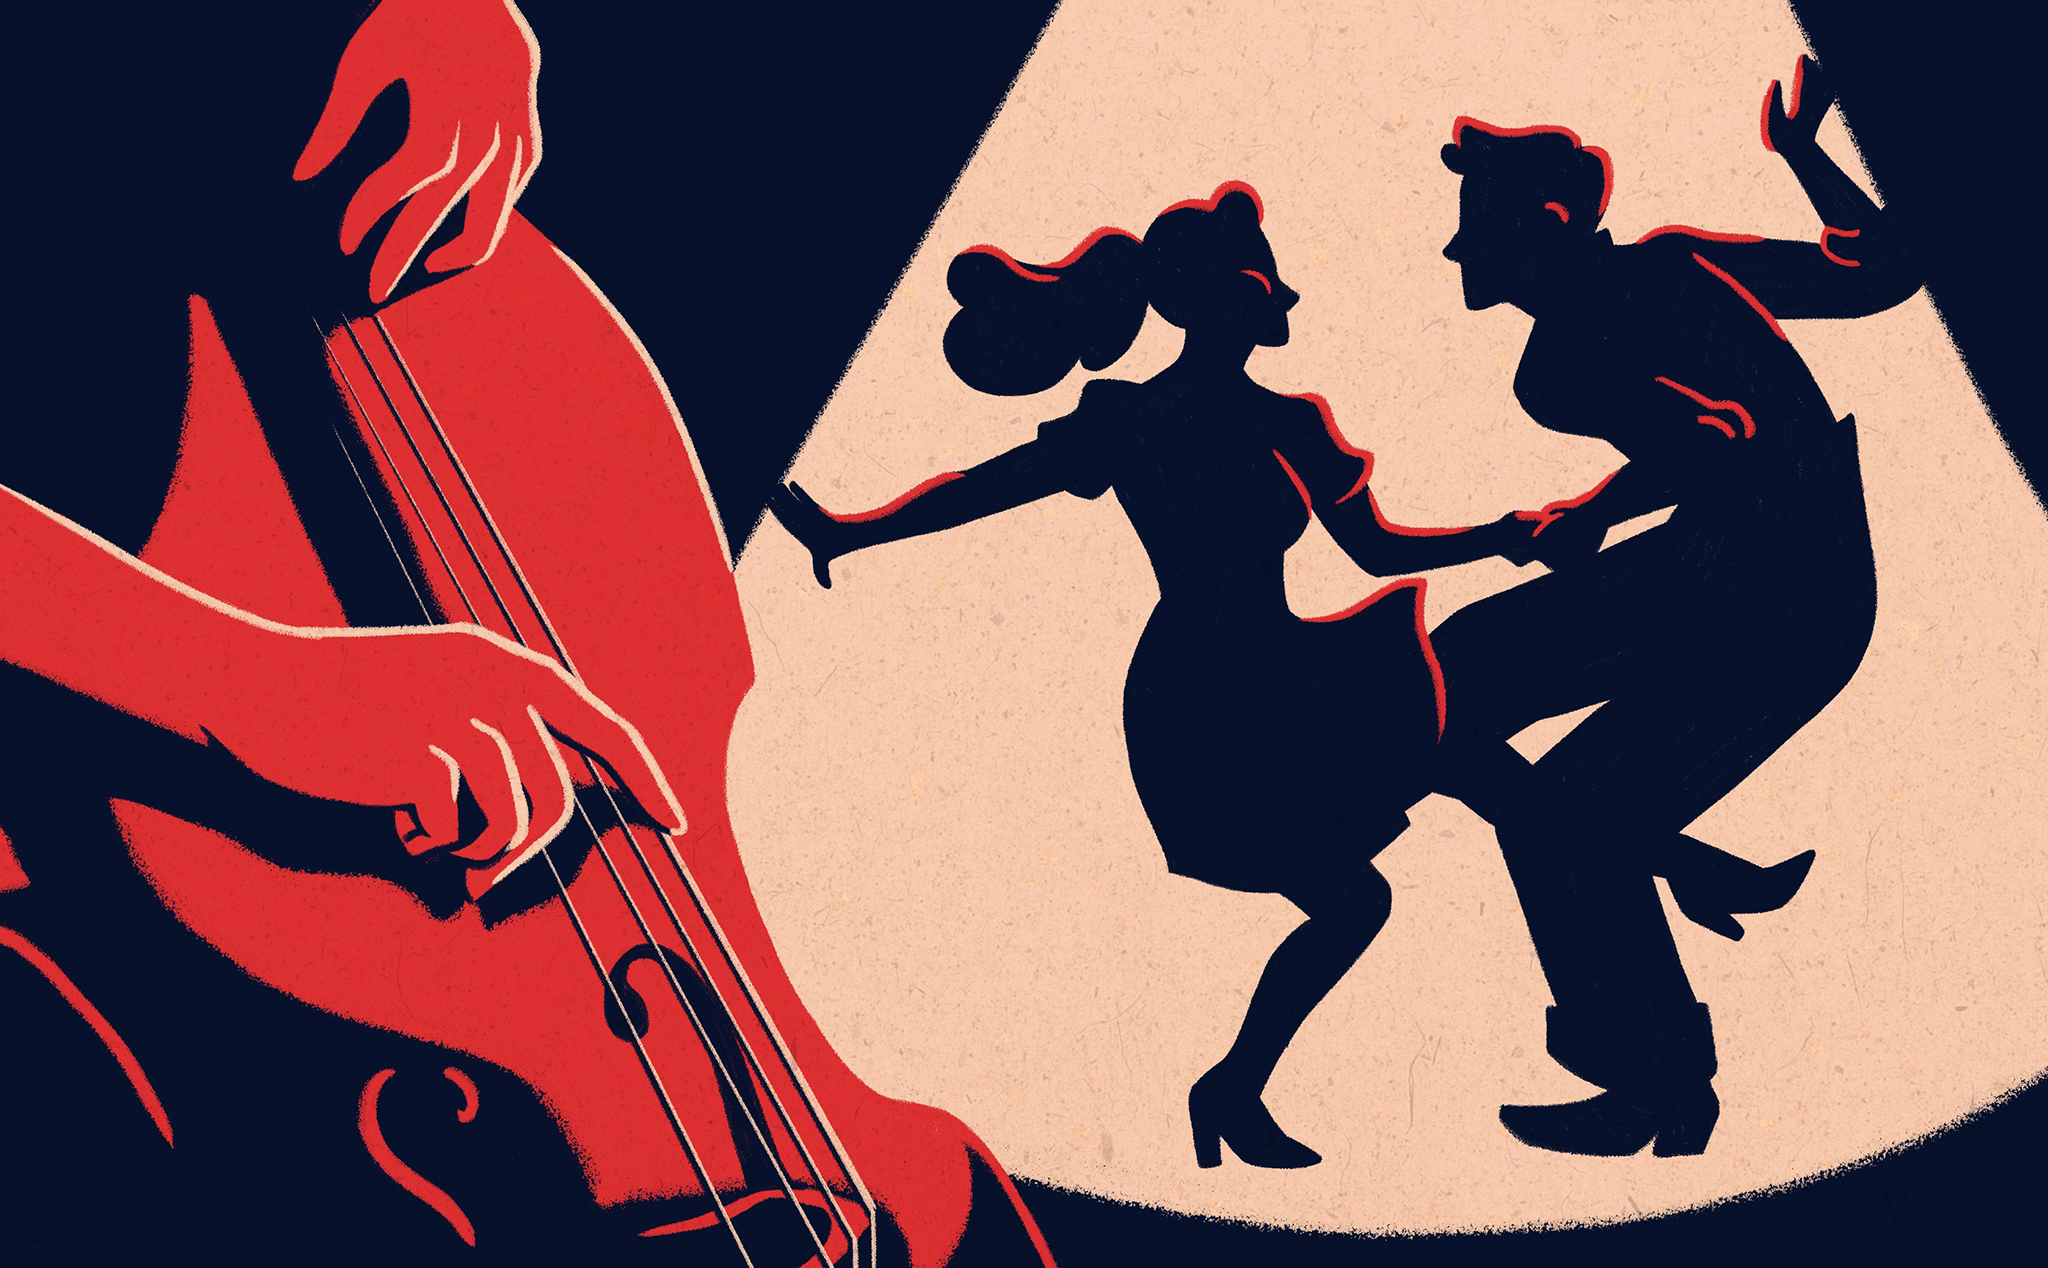 Tìm hiểu về Jazz: "Liệu nữ chính trong La La Land có đáng trách?"